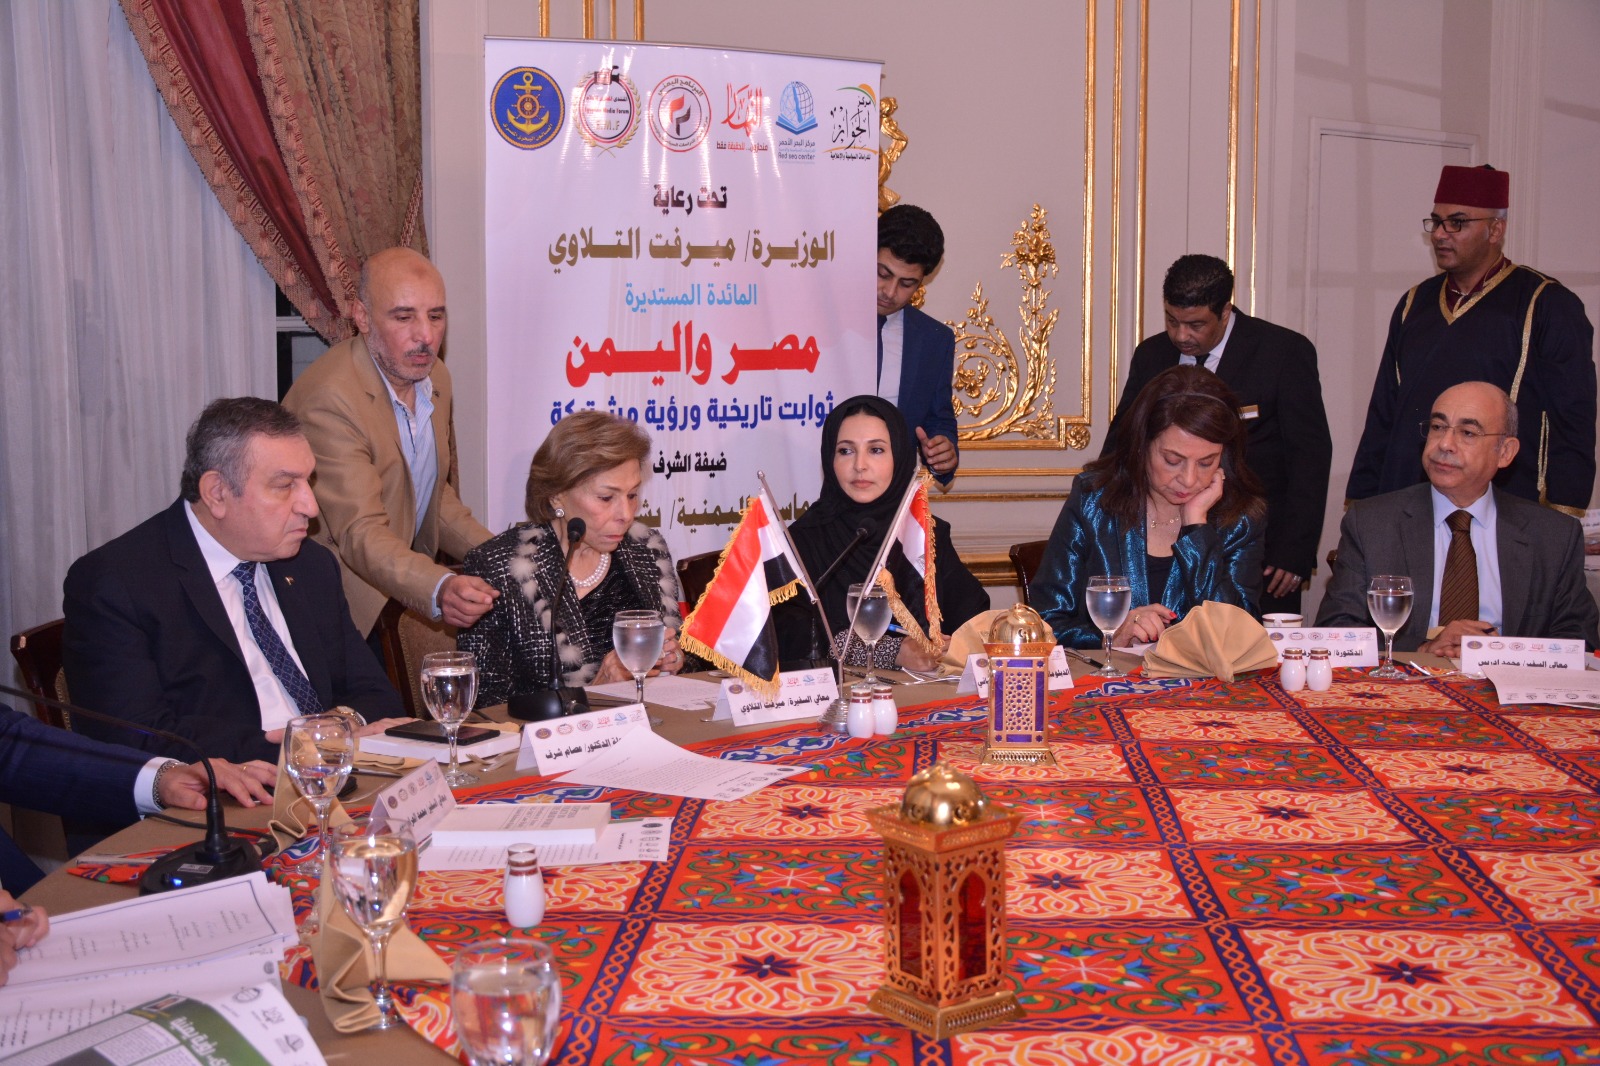 الدبلوماسية اليمنية بشرى الإرياني تكرم بدرع الإخوة المصري اليمني من كبار الشخصيات المصرية